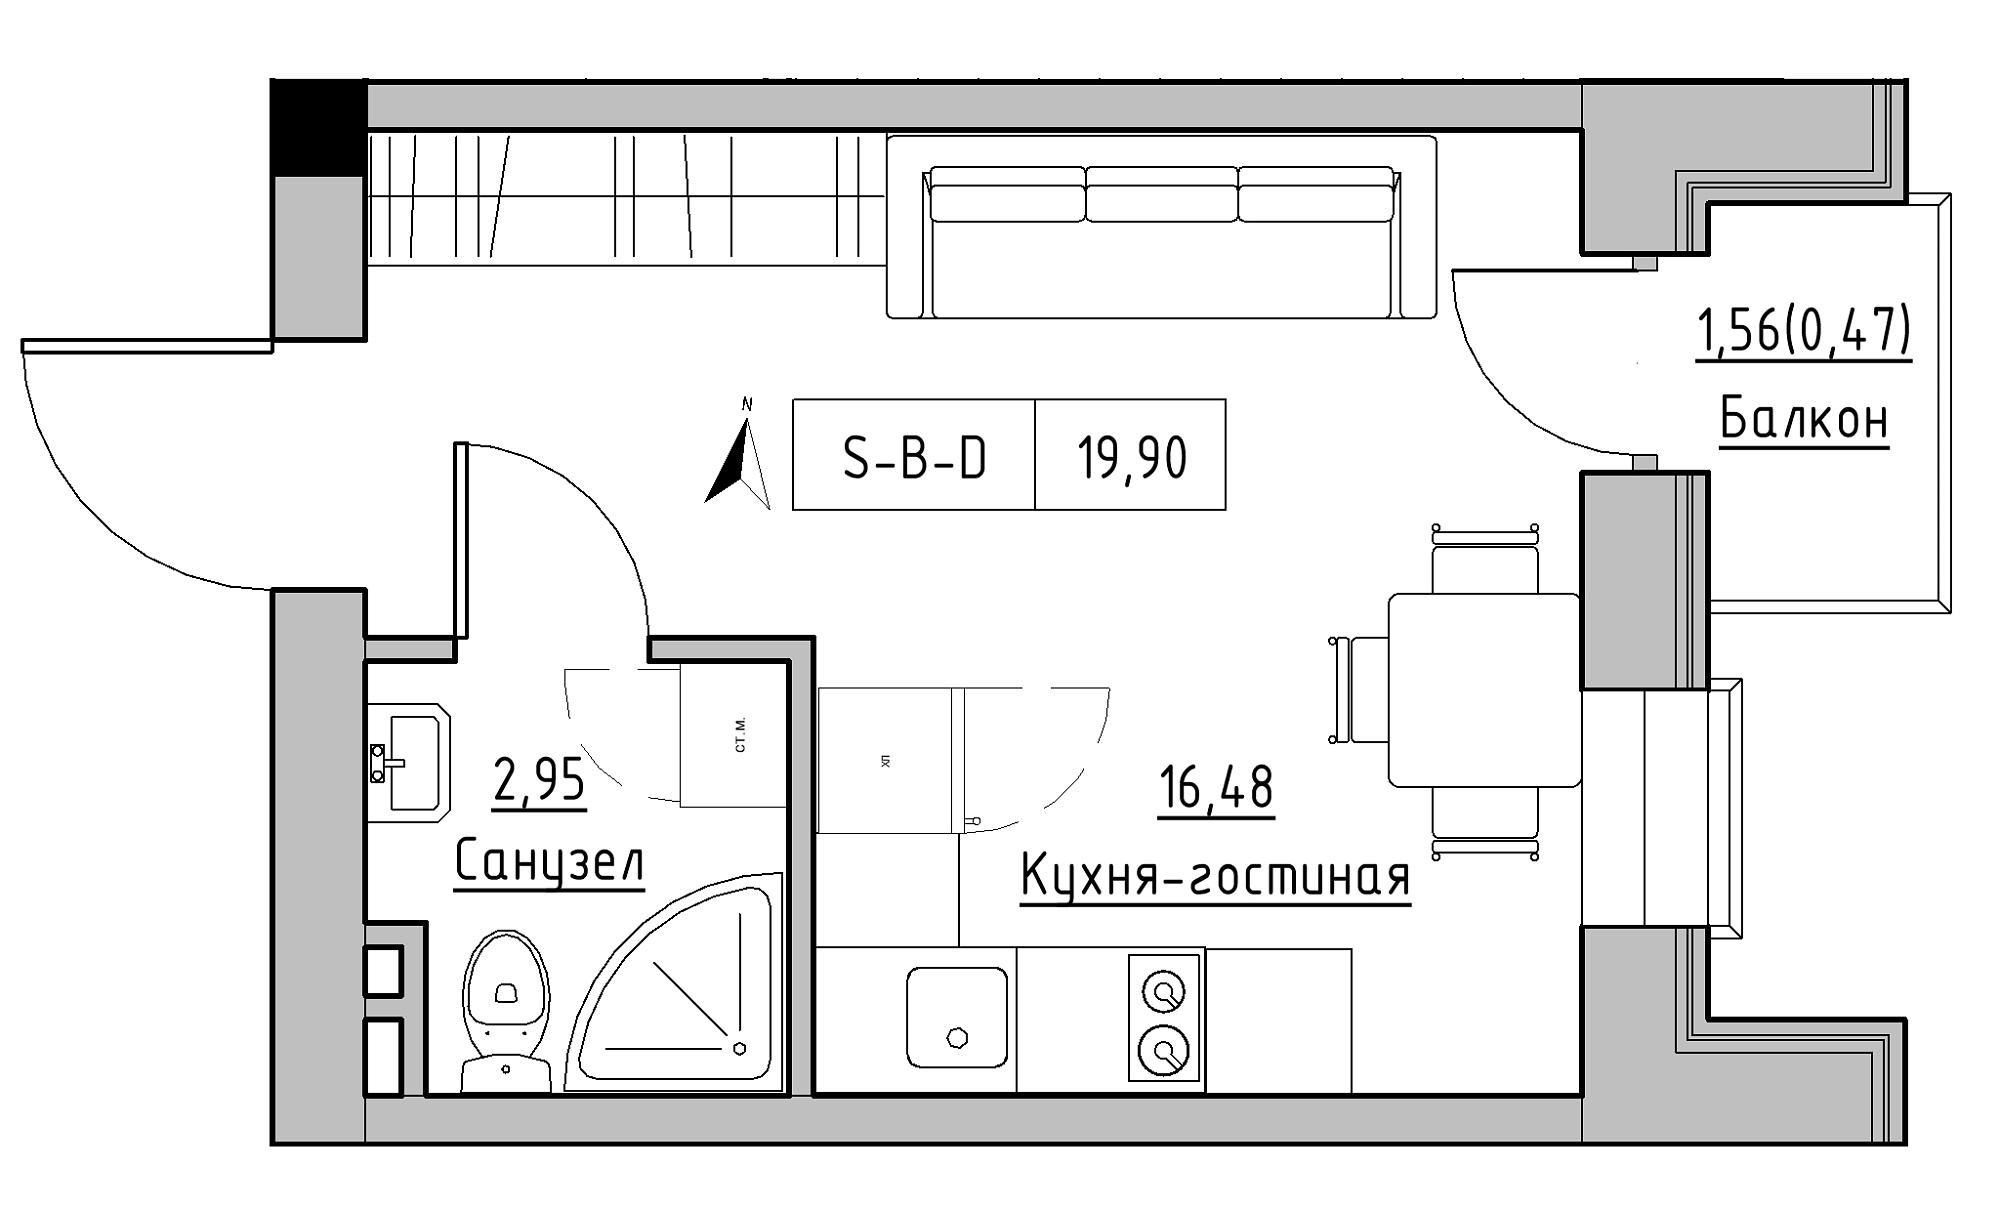 Планування Smart-квартира площею 19.9м2, KS-023-04/0006.